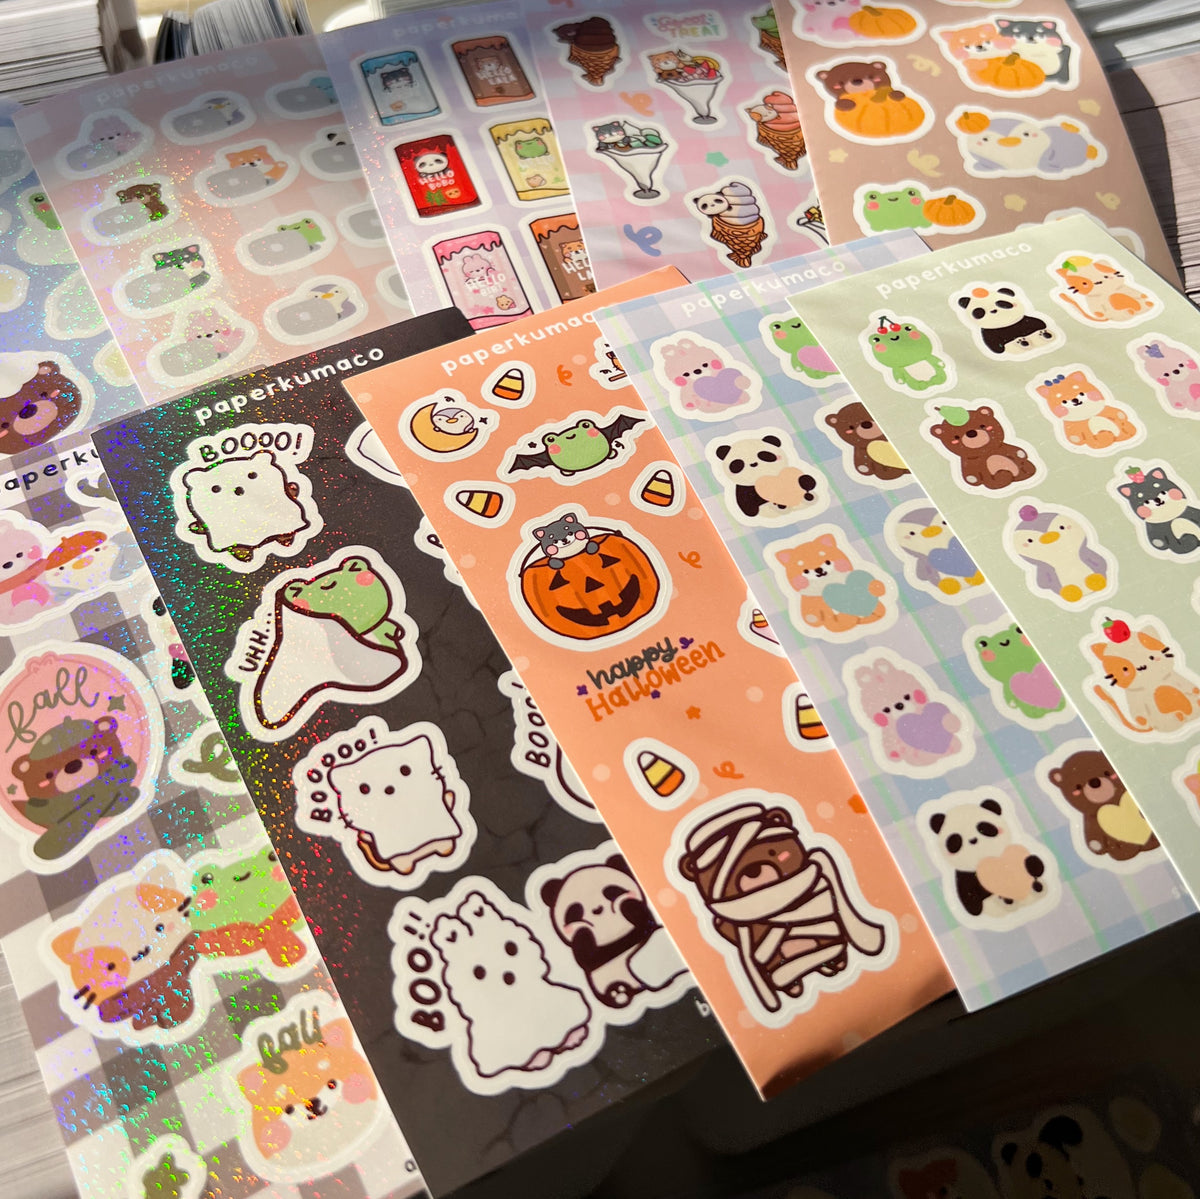 Shimmer Sticker Sheets Random Bag (5)